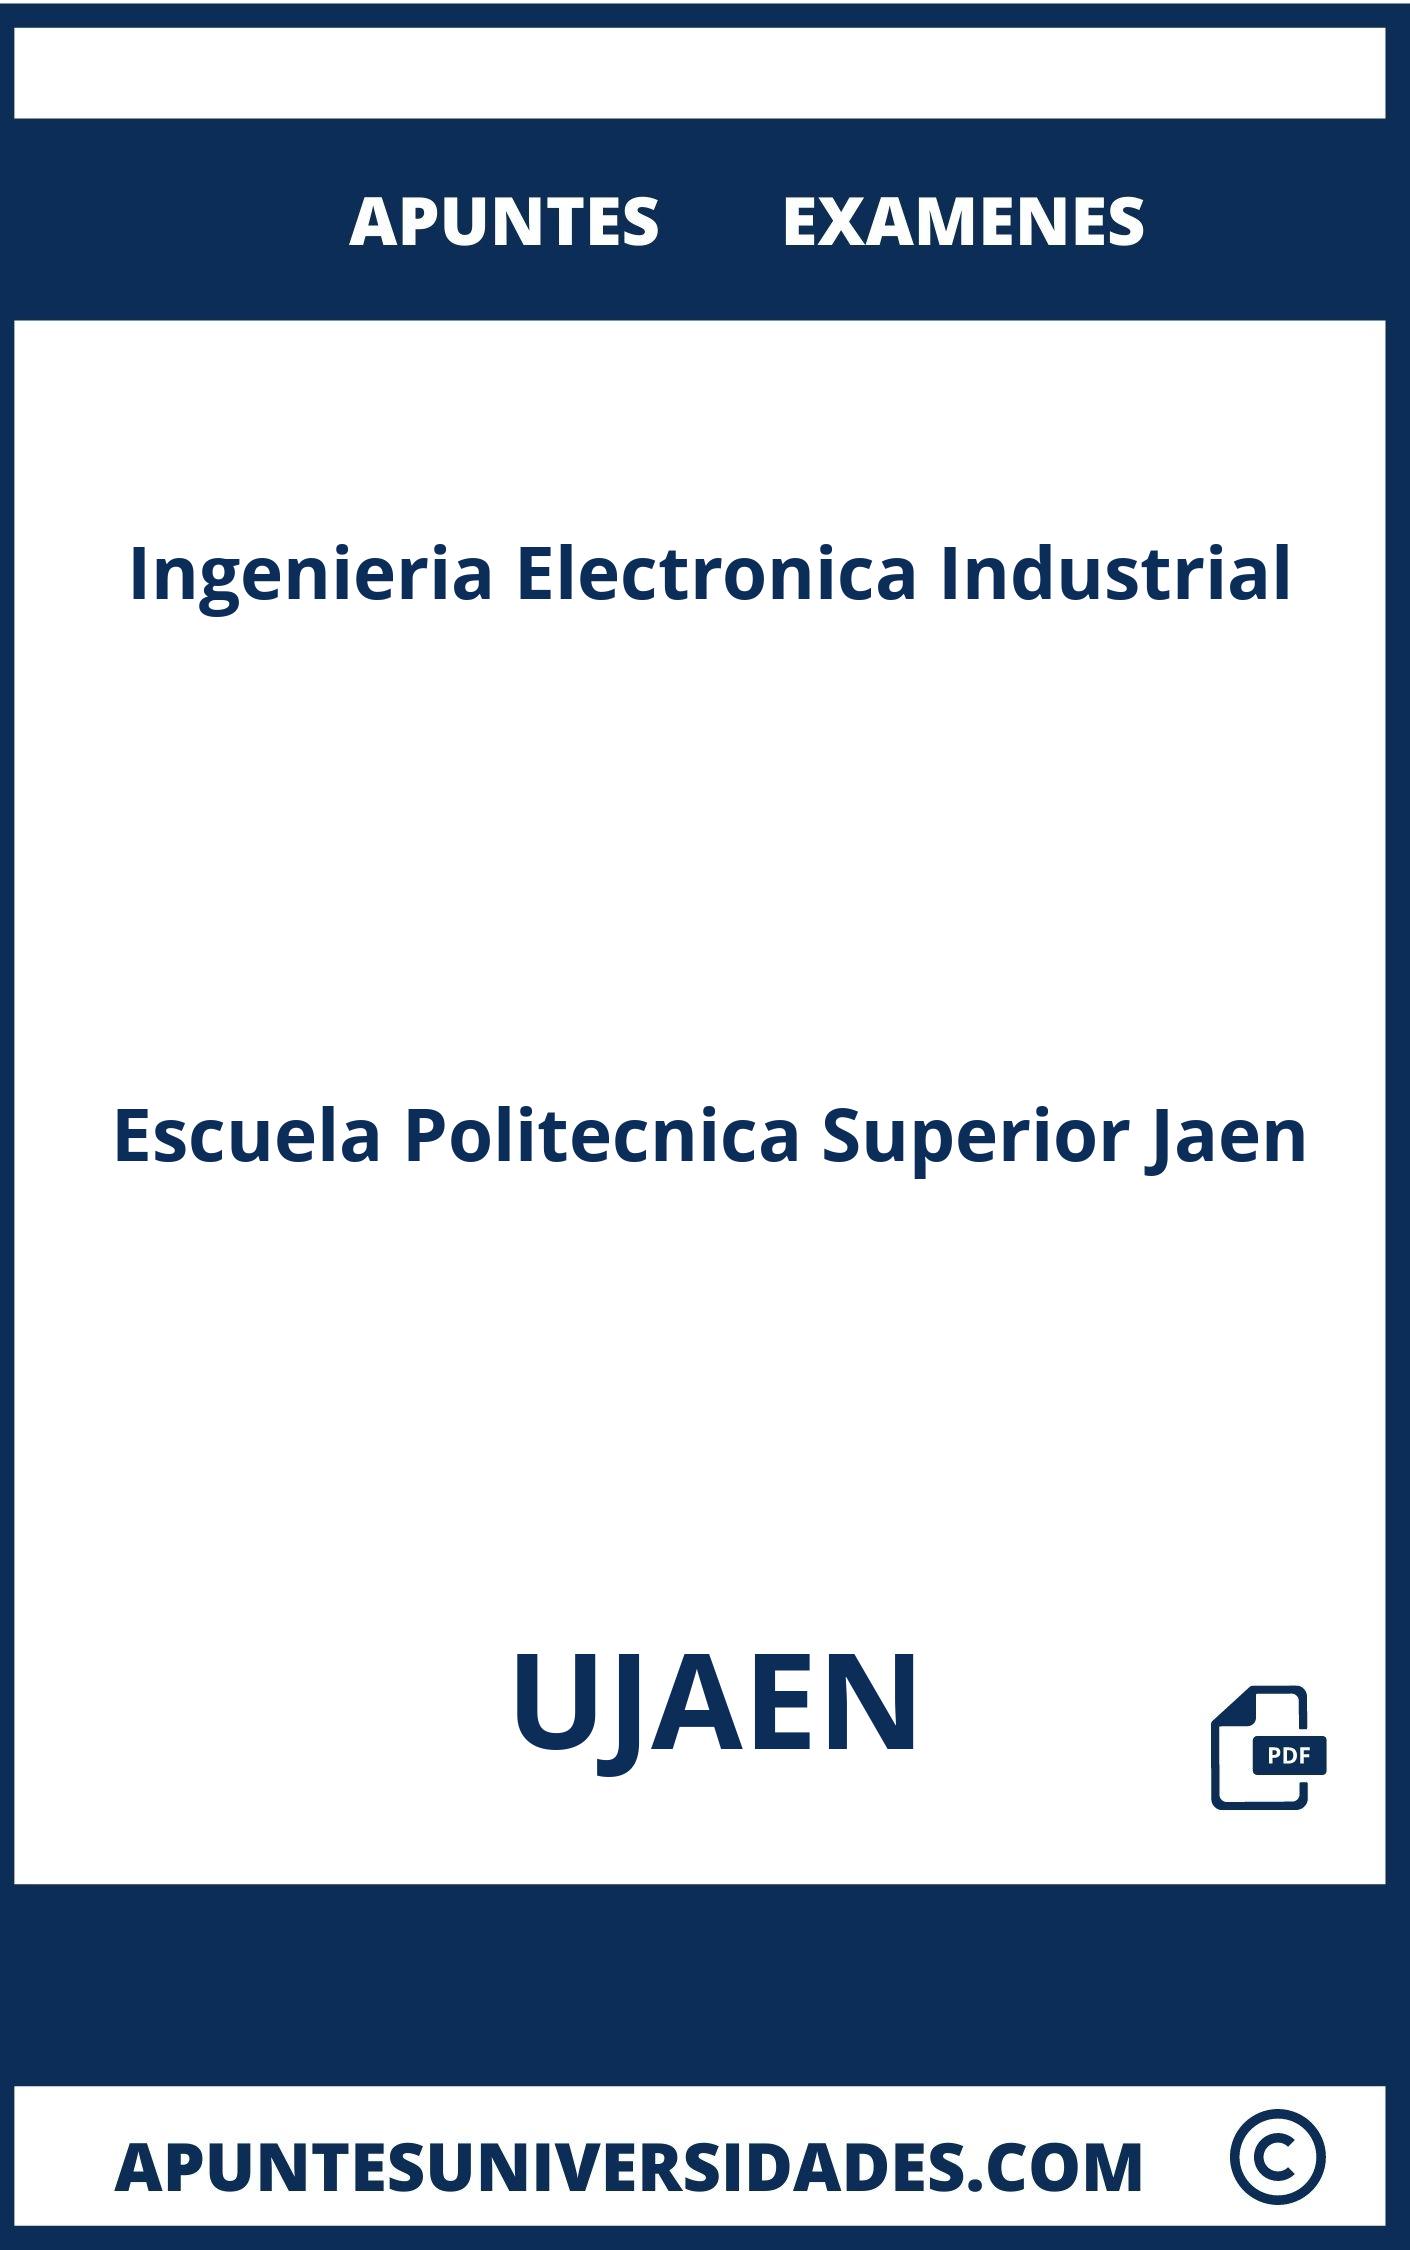 Examenes y Apuntes Ingenieria Electronica Industrial UJAEN